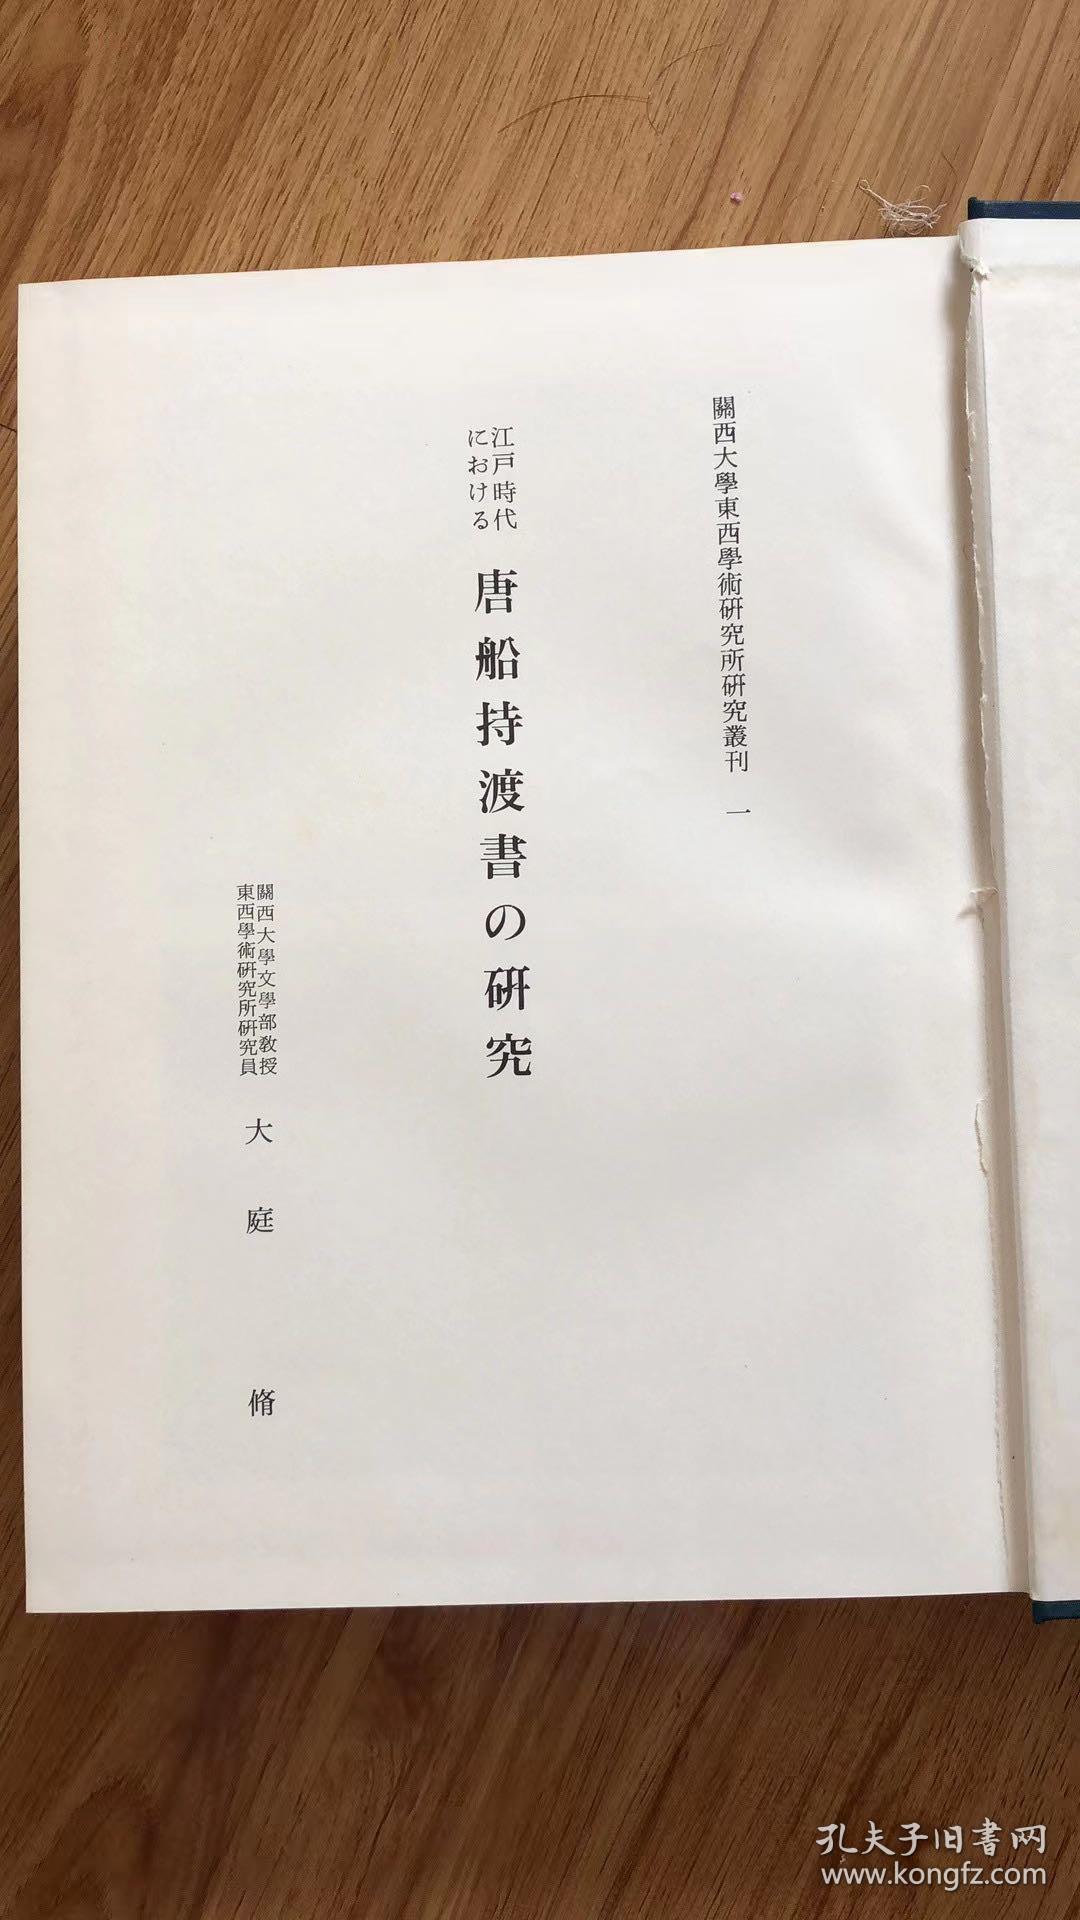 江戸時代における唐船持渡書の研究